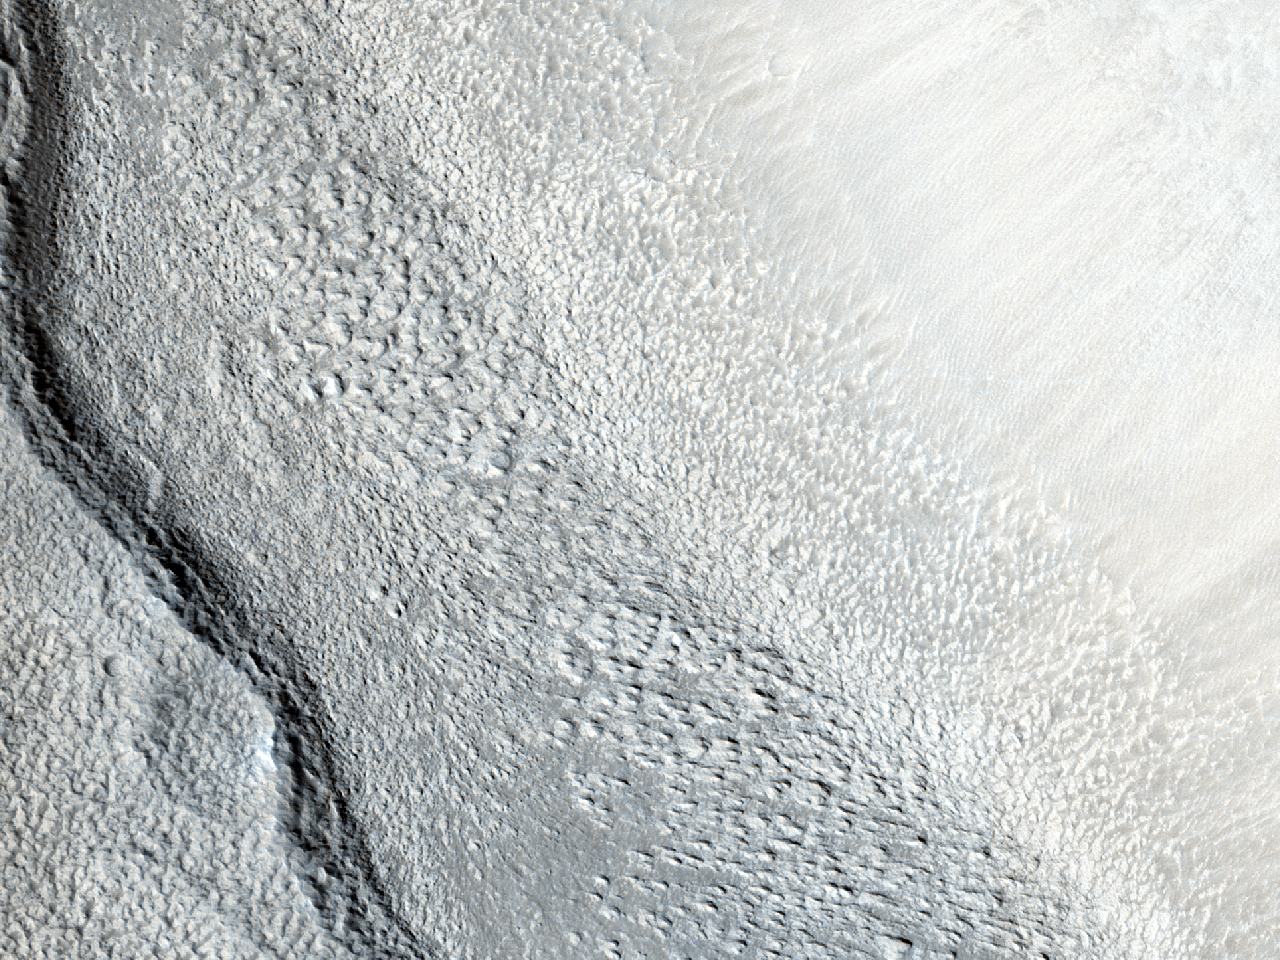 Stożkowate wgłębienia wewnątrz krateru w północnej części Arabia Terra